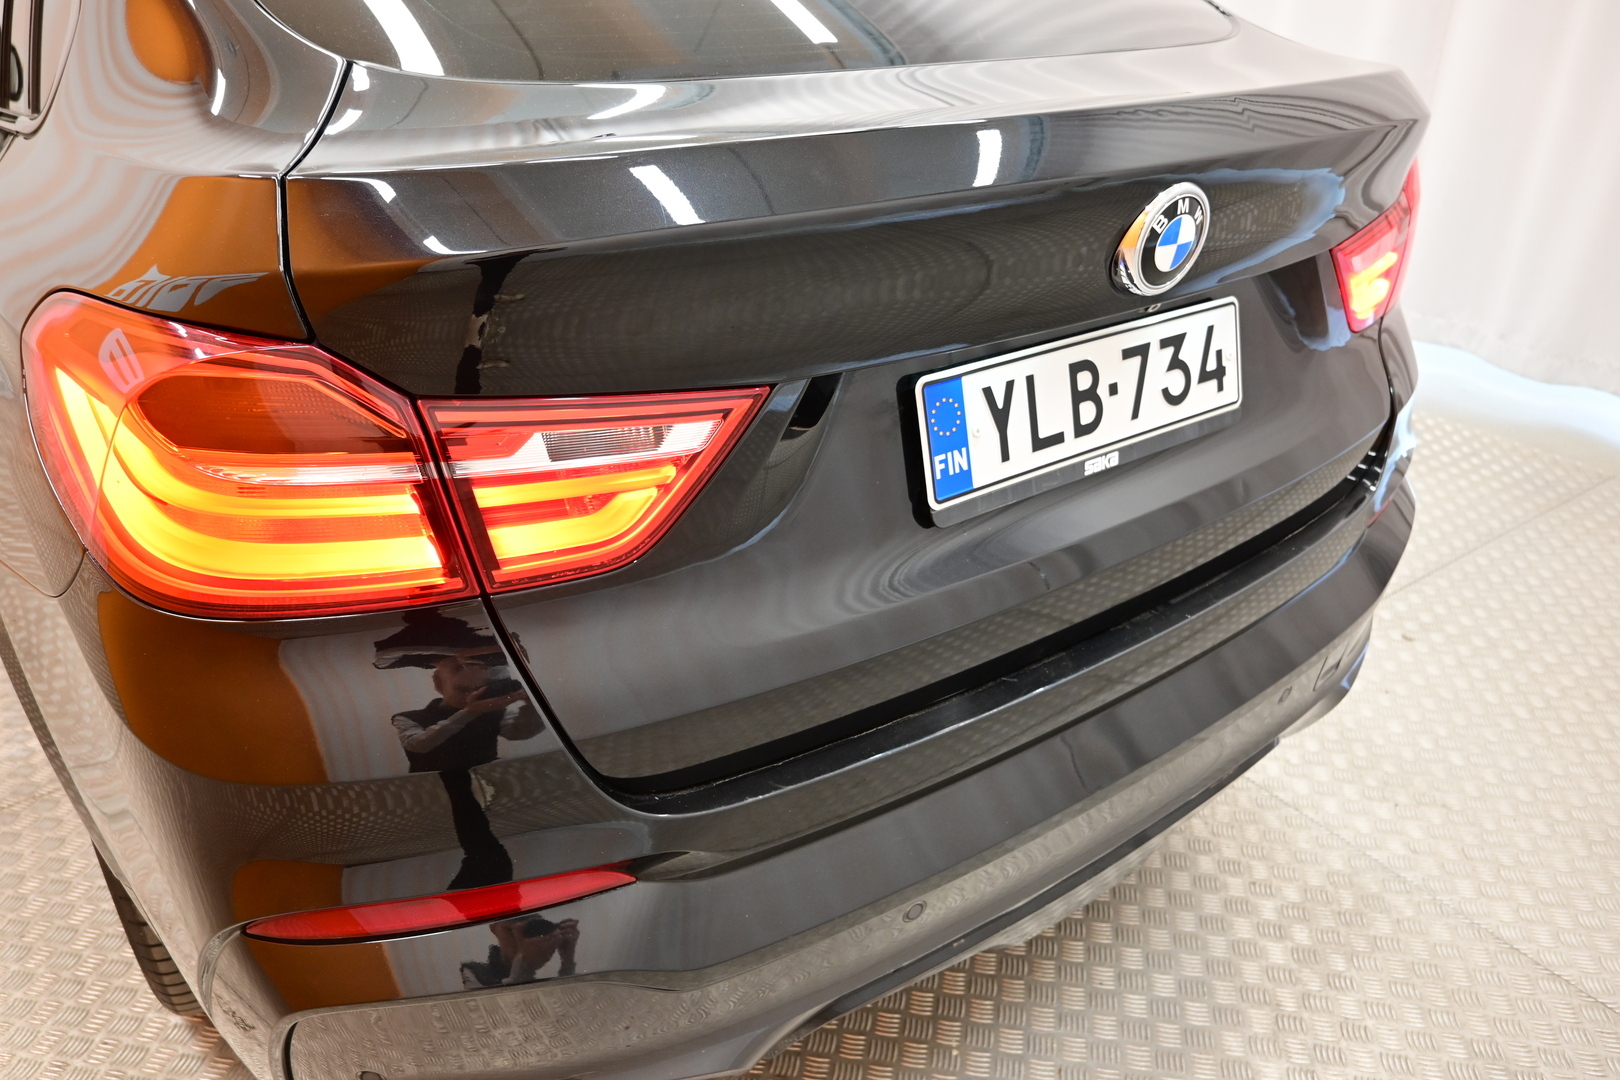 Musta Sedan, BMW X4 – YLB-734